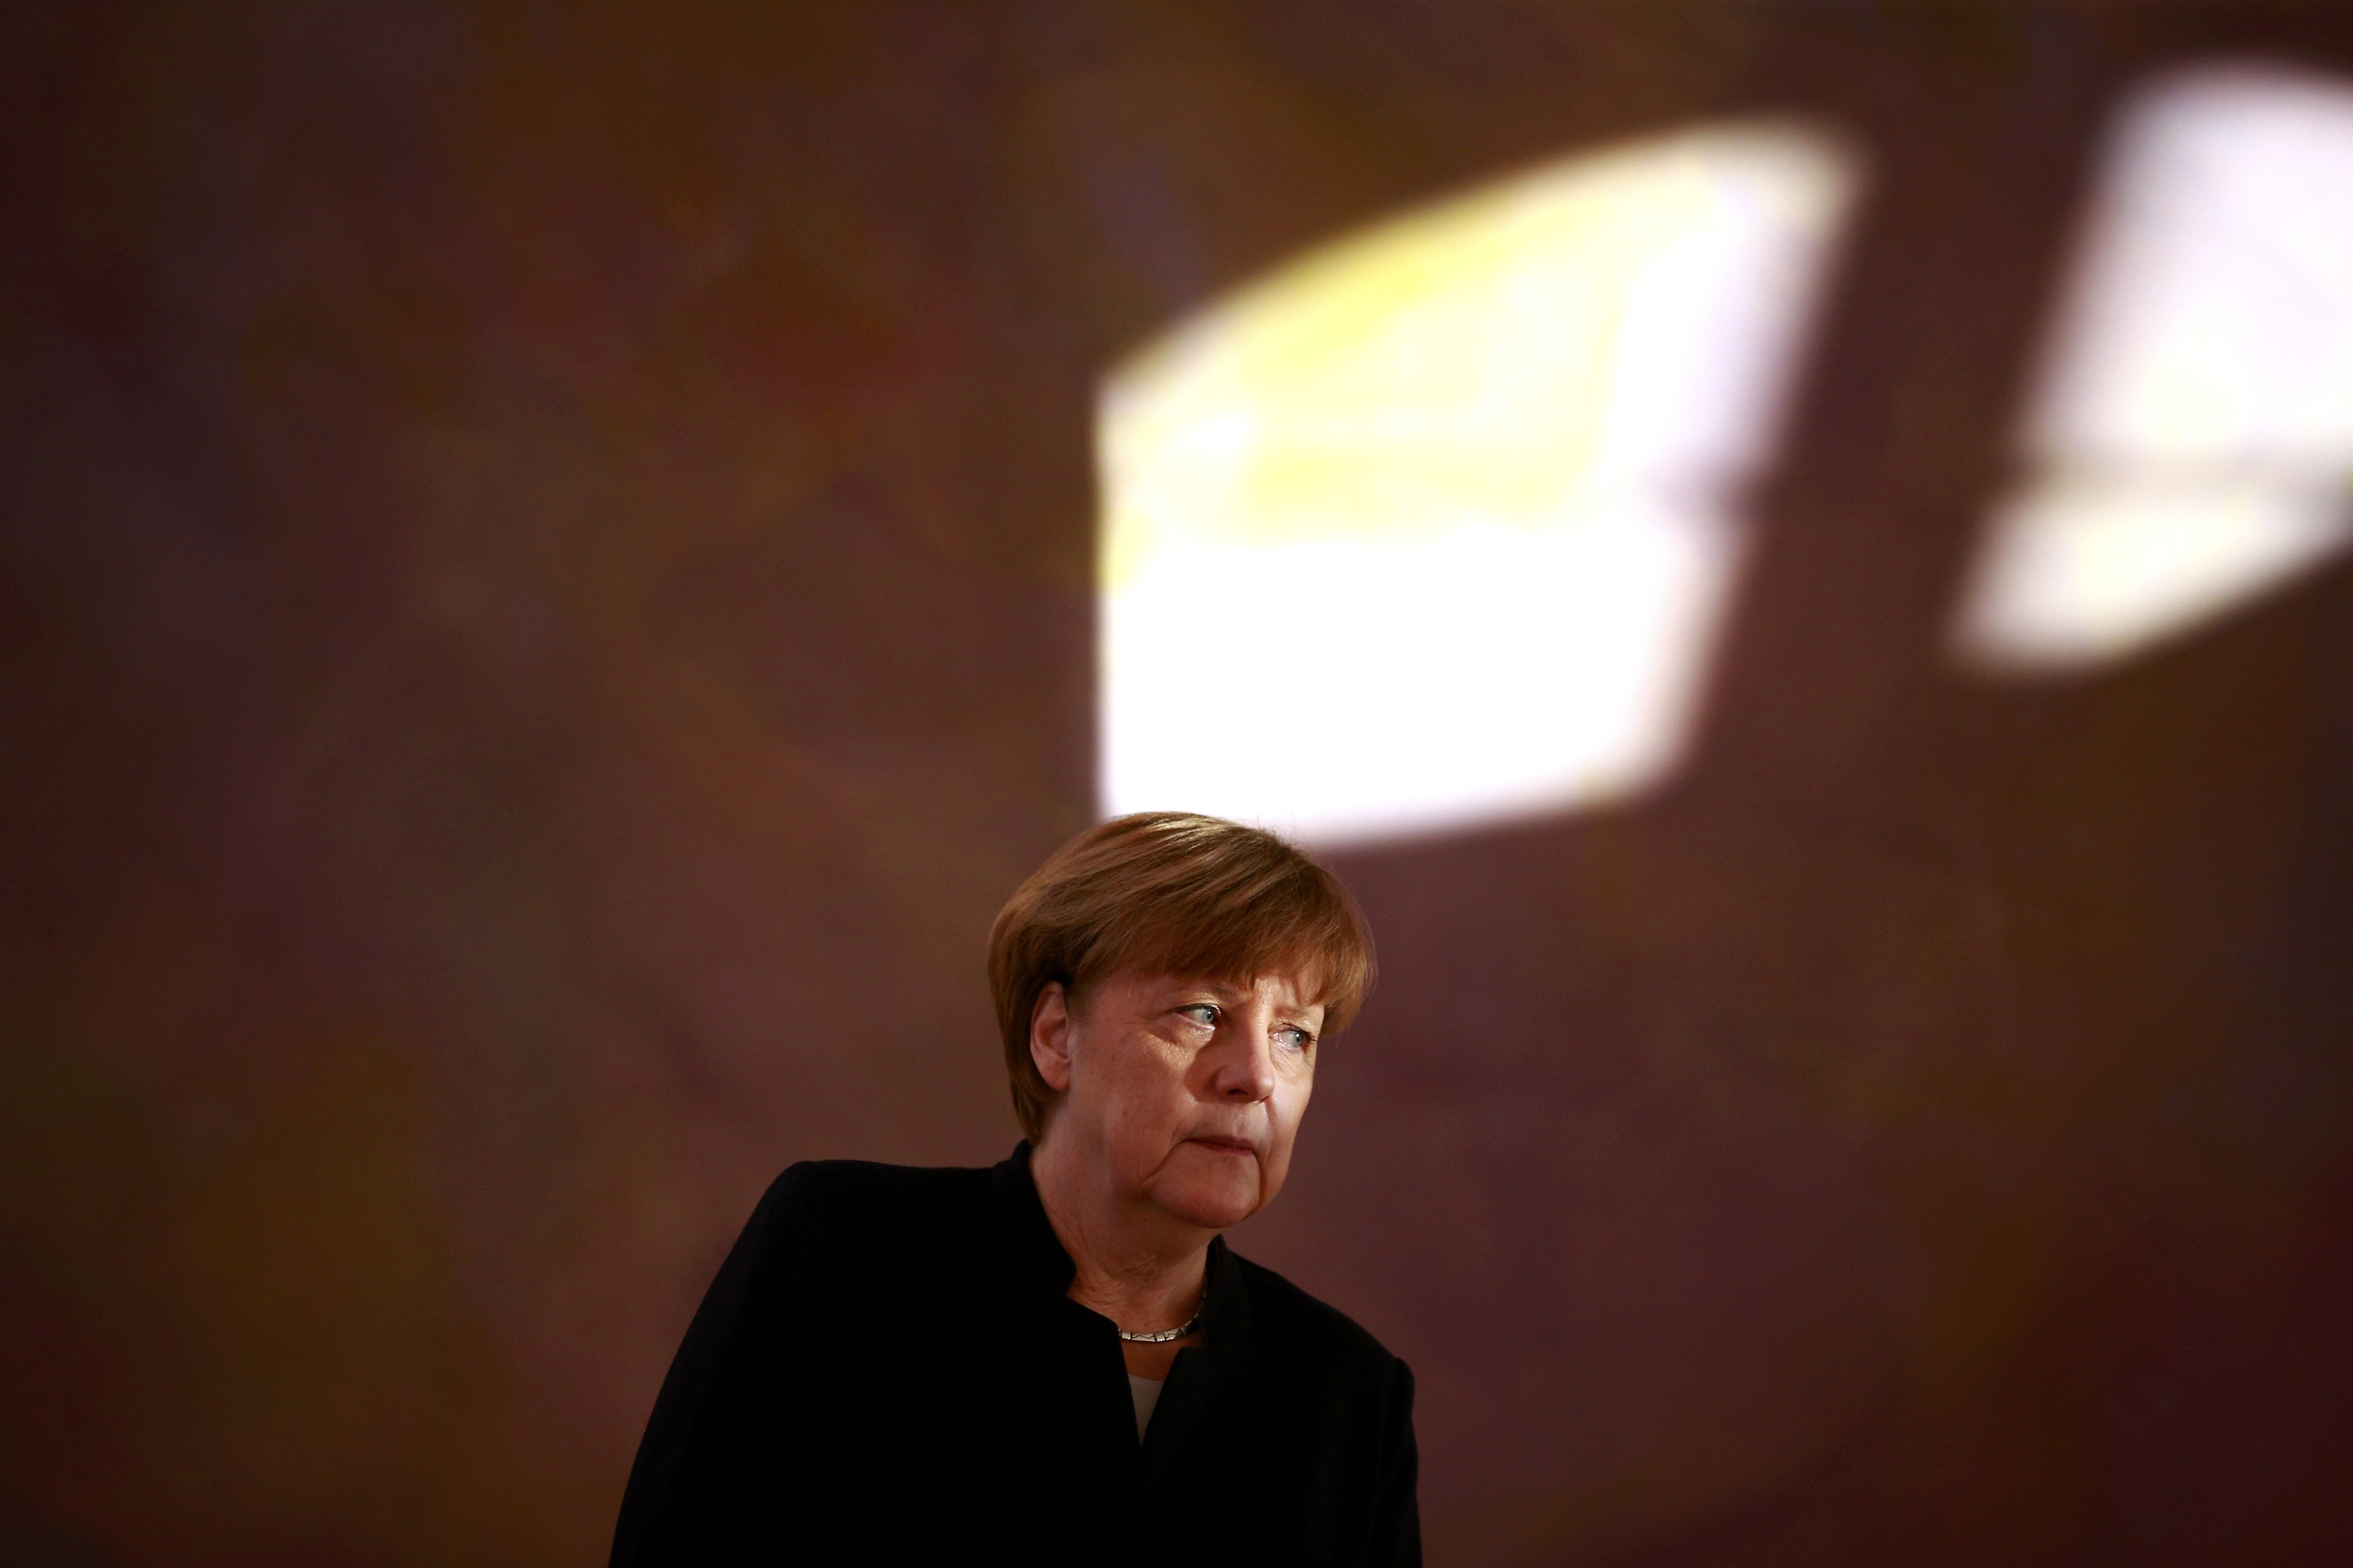 المستشارة الألمانية انجيلا ميركل في قصر بيلفو في برلين قبل تعيين الوزراء الجدد